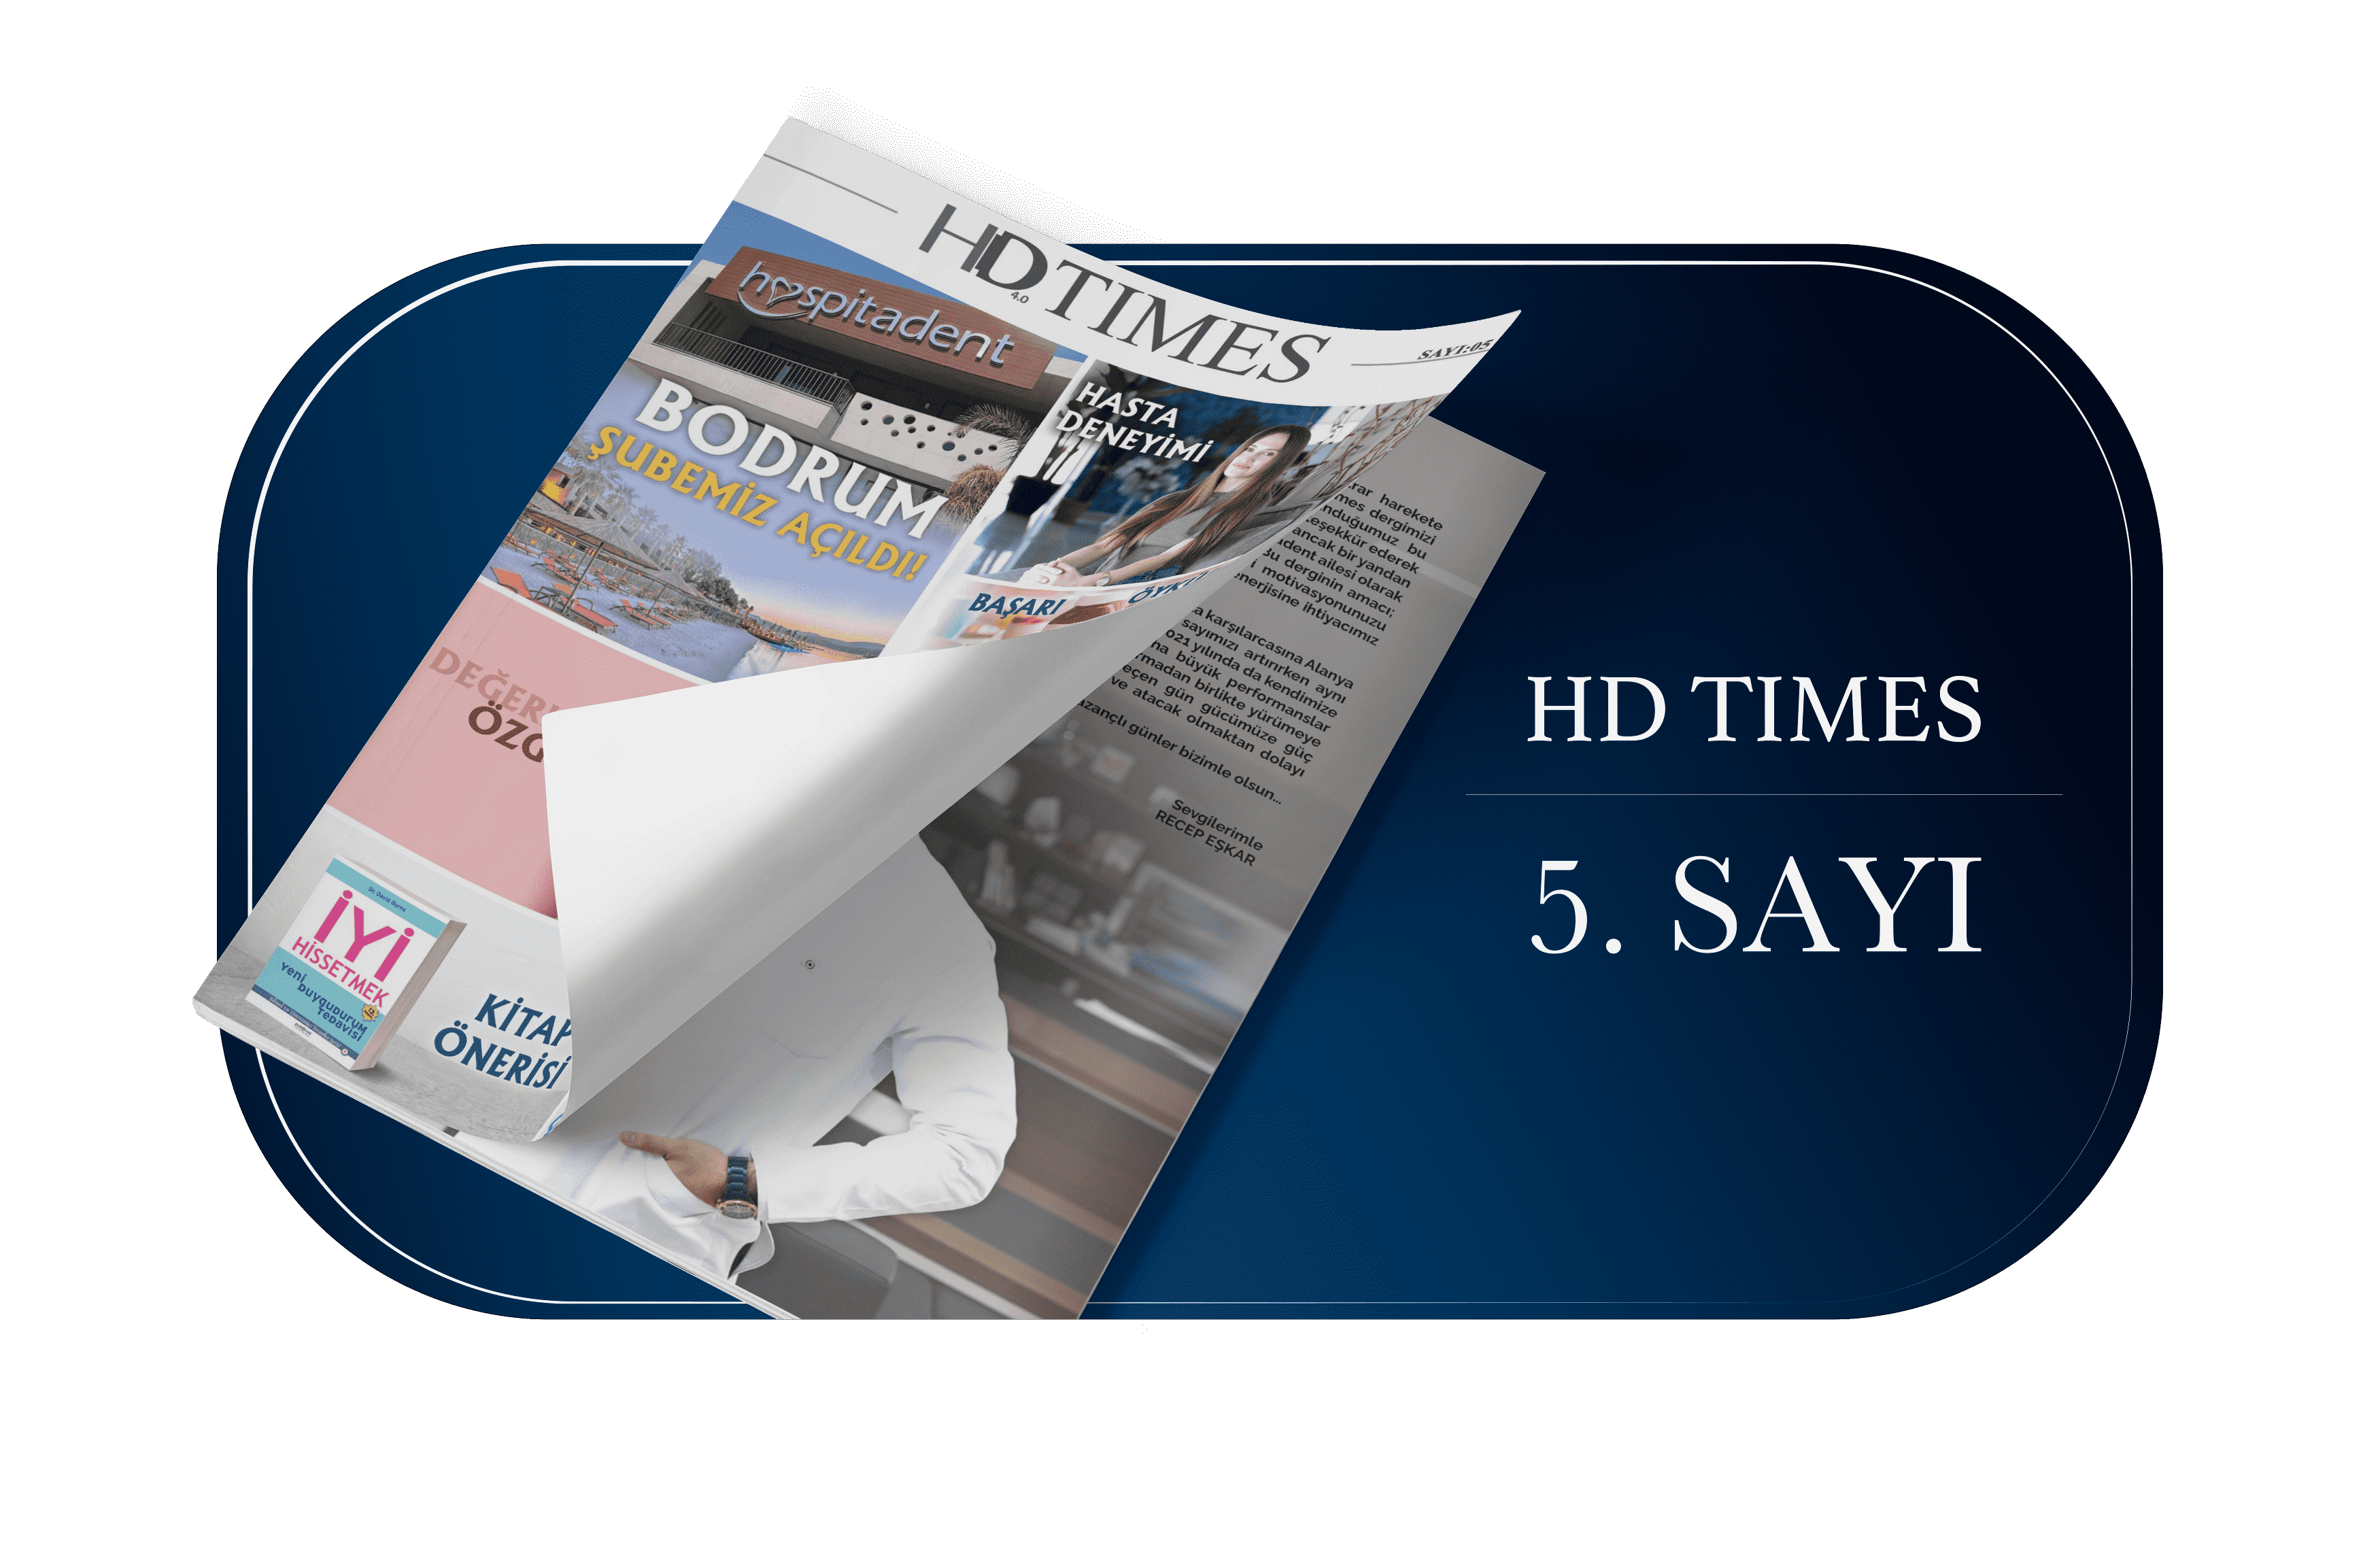 5. SAYI Publicaciones De HD Times